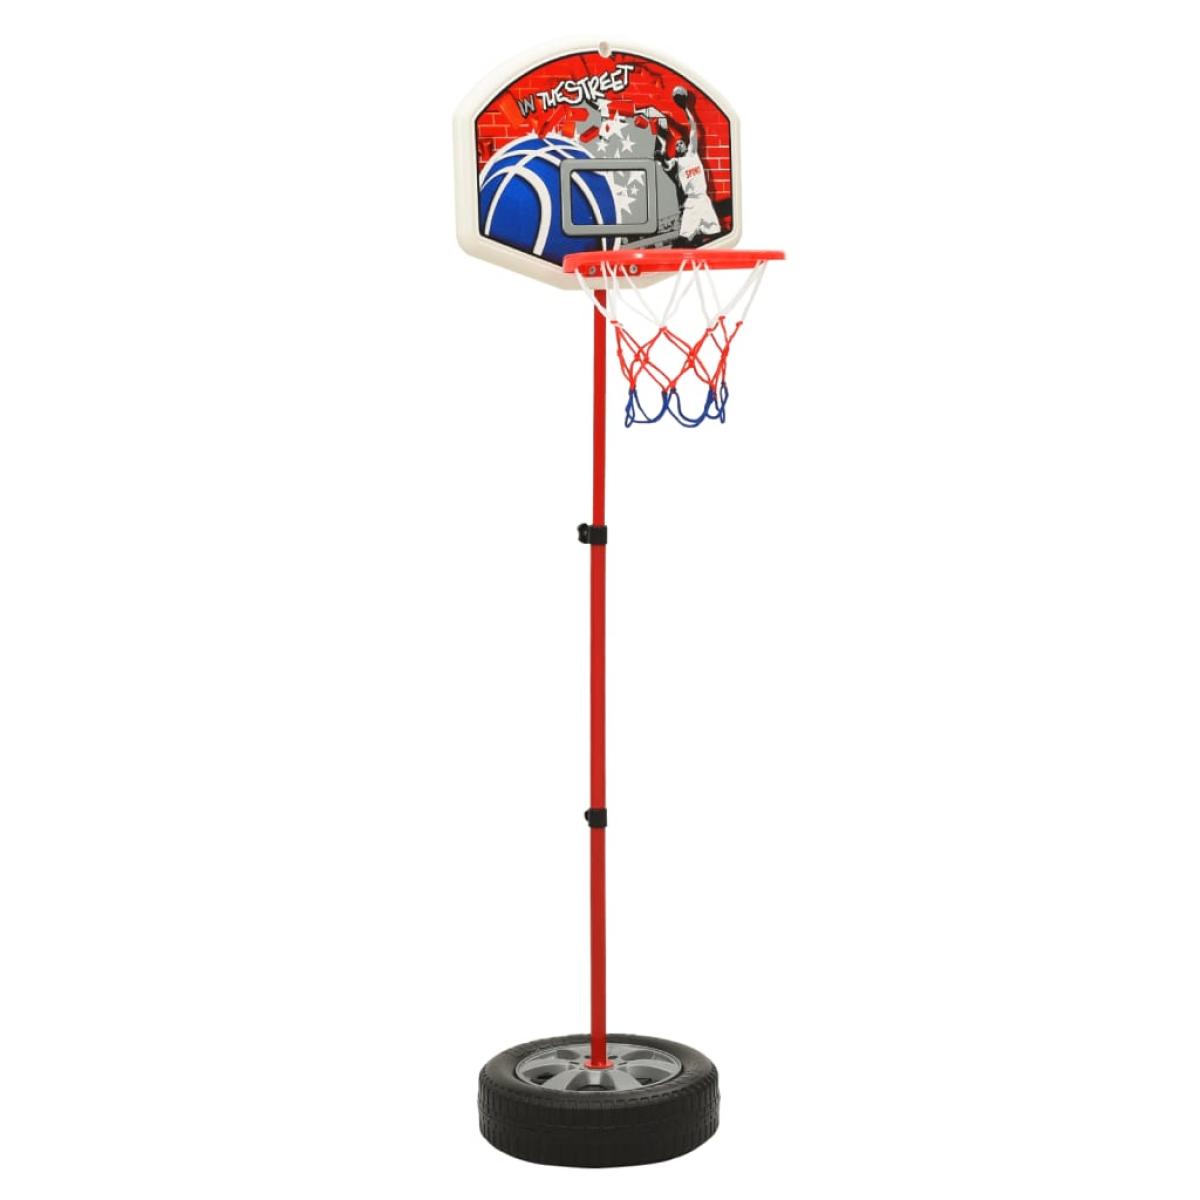 Juego de baloncesto infantil ajustable 120 cm